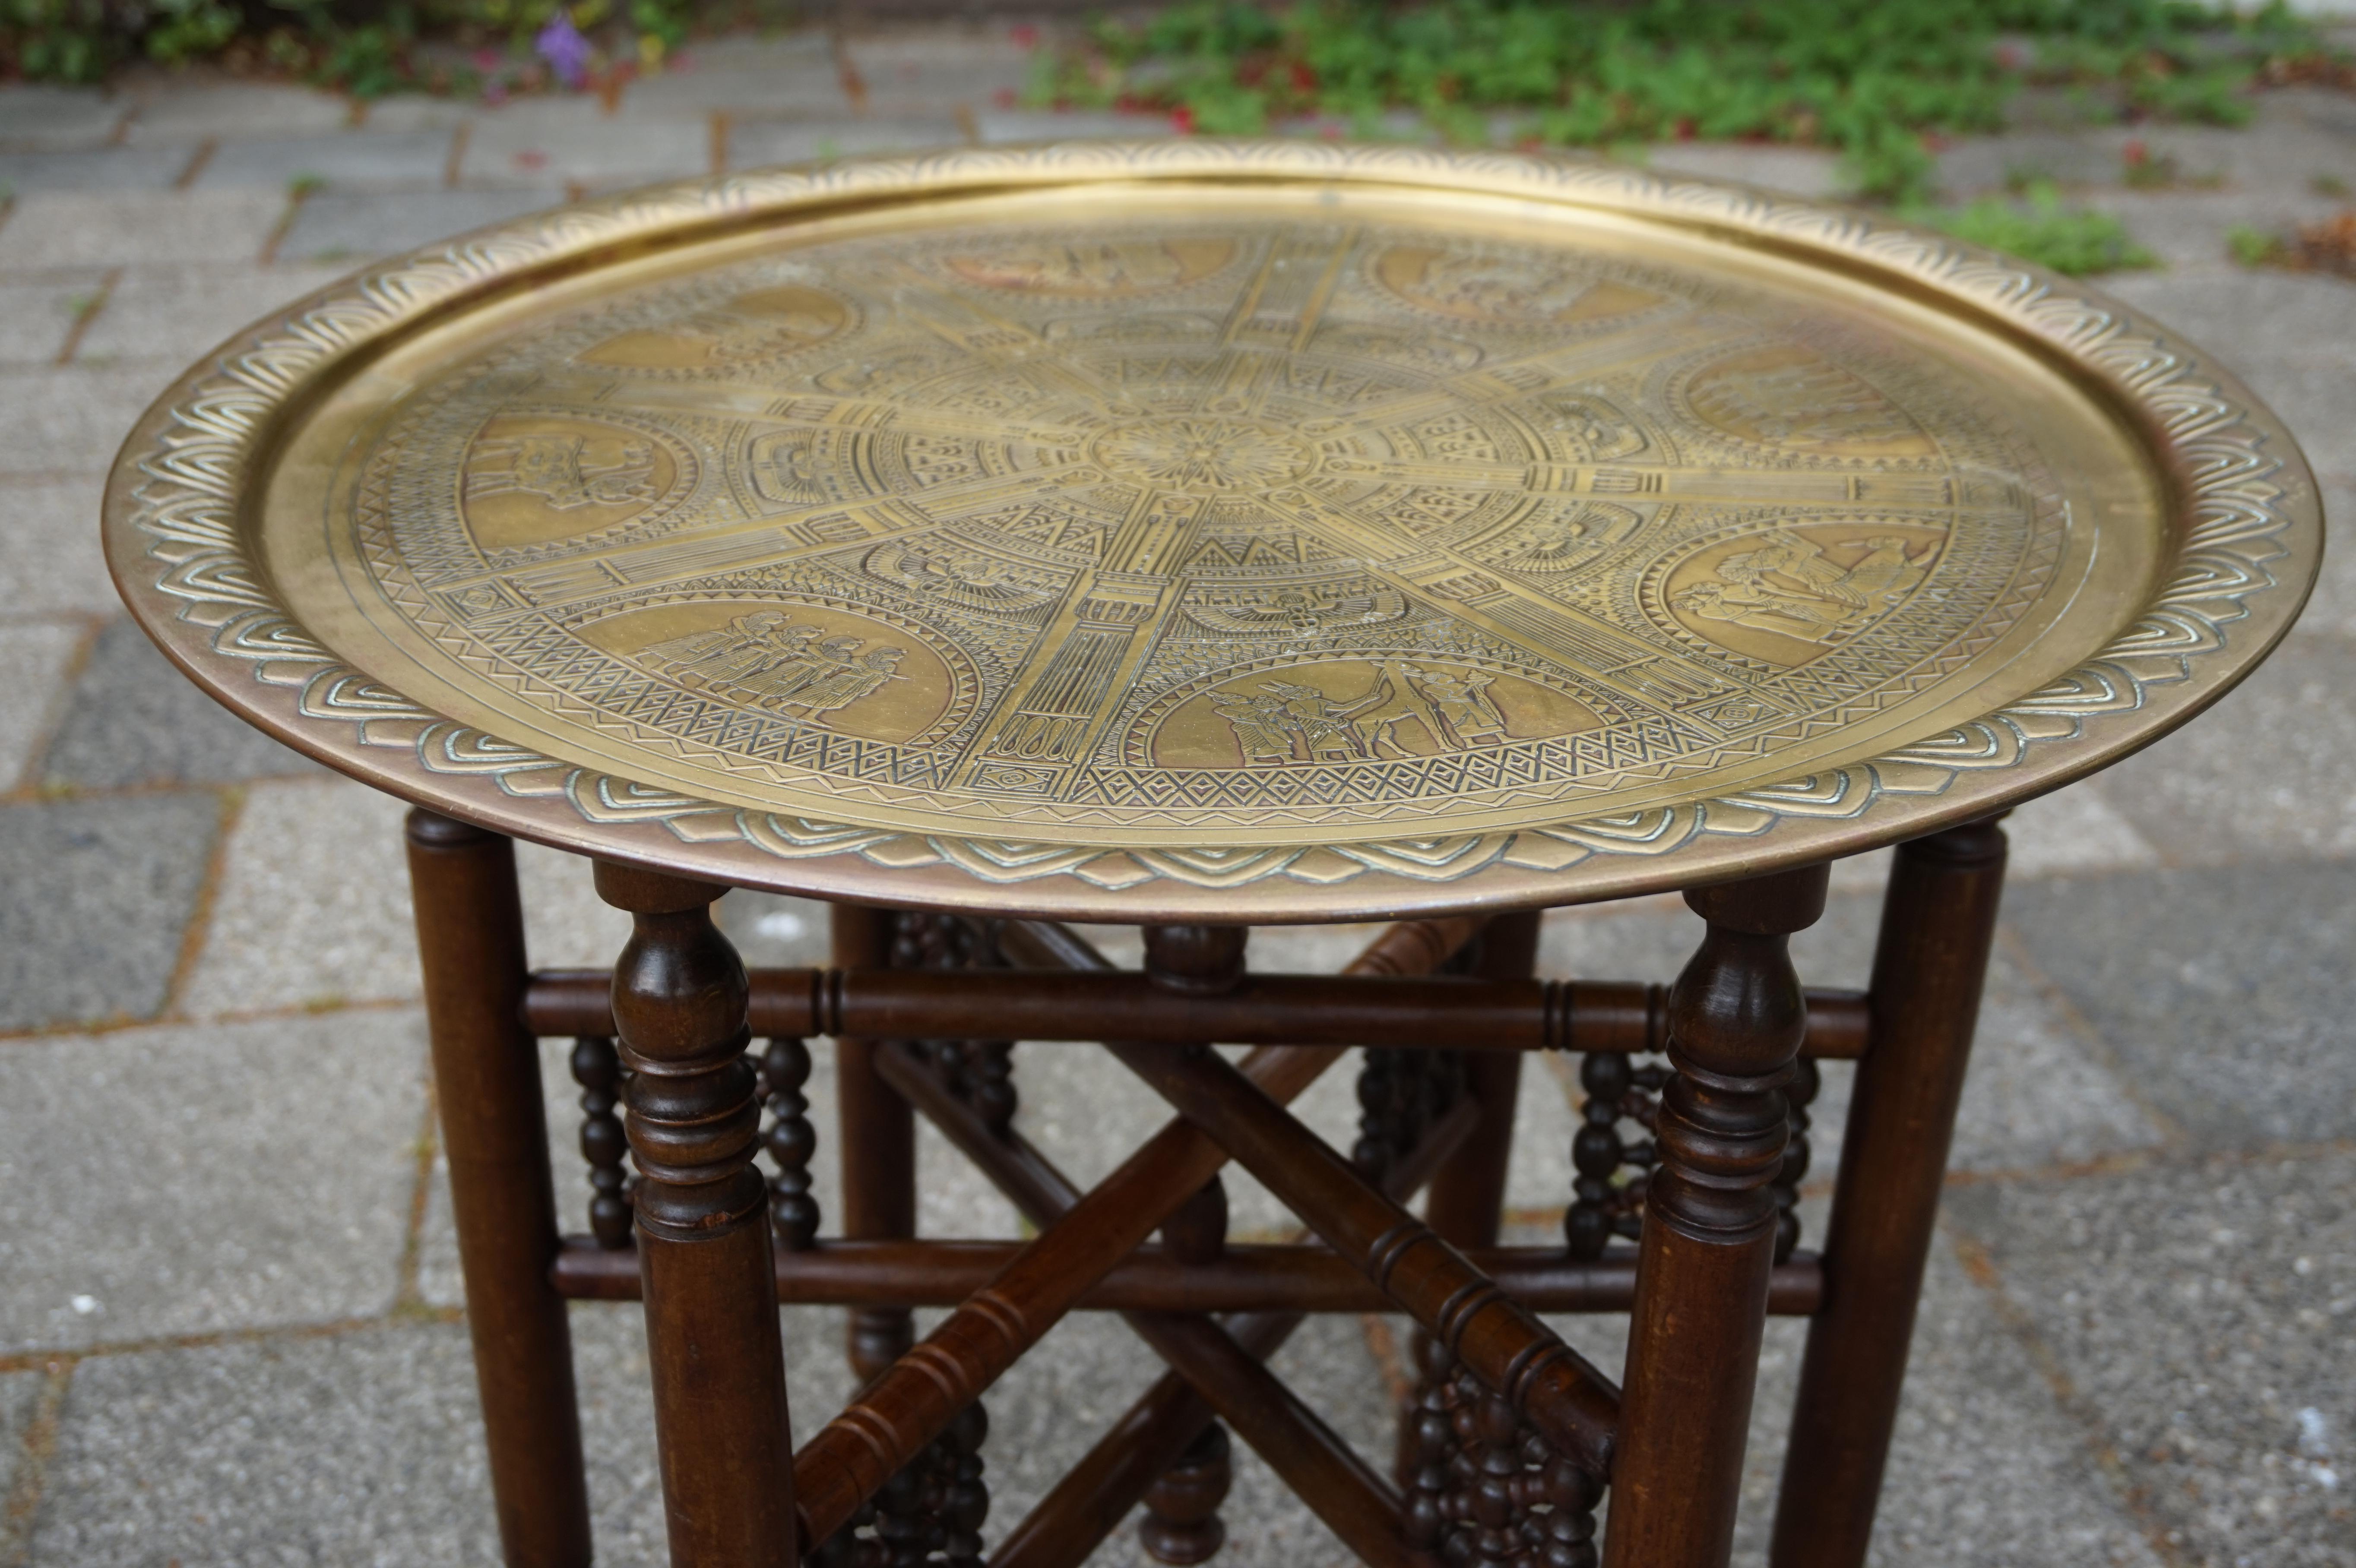 Stilvoller und aussagekräftiger ägyptischer Tabletttisch aus dem frühen 20.

Wenn Sie Ihr Haus, einen Raum oder ein Geschäft mit einem ägyptischen Thema dekorieren, dann könnte dieser faltbare Tabletttisch perfekt sein. Dieser handgefertigte Tisch